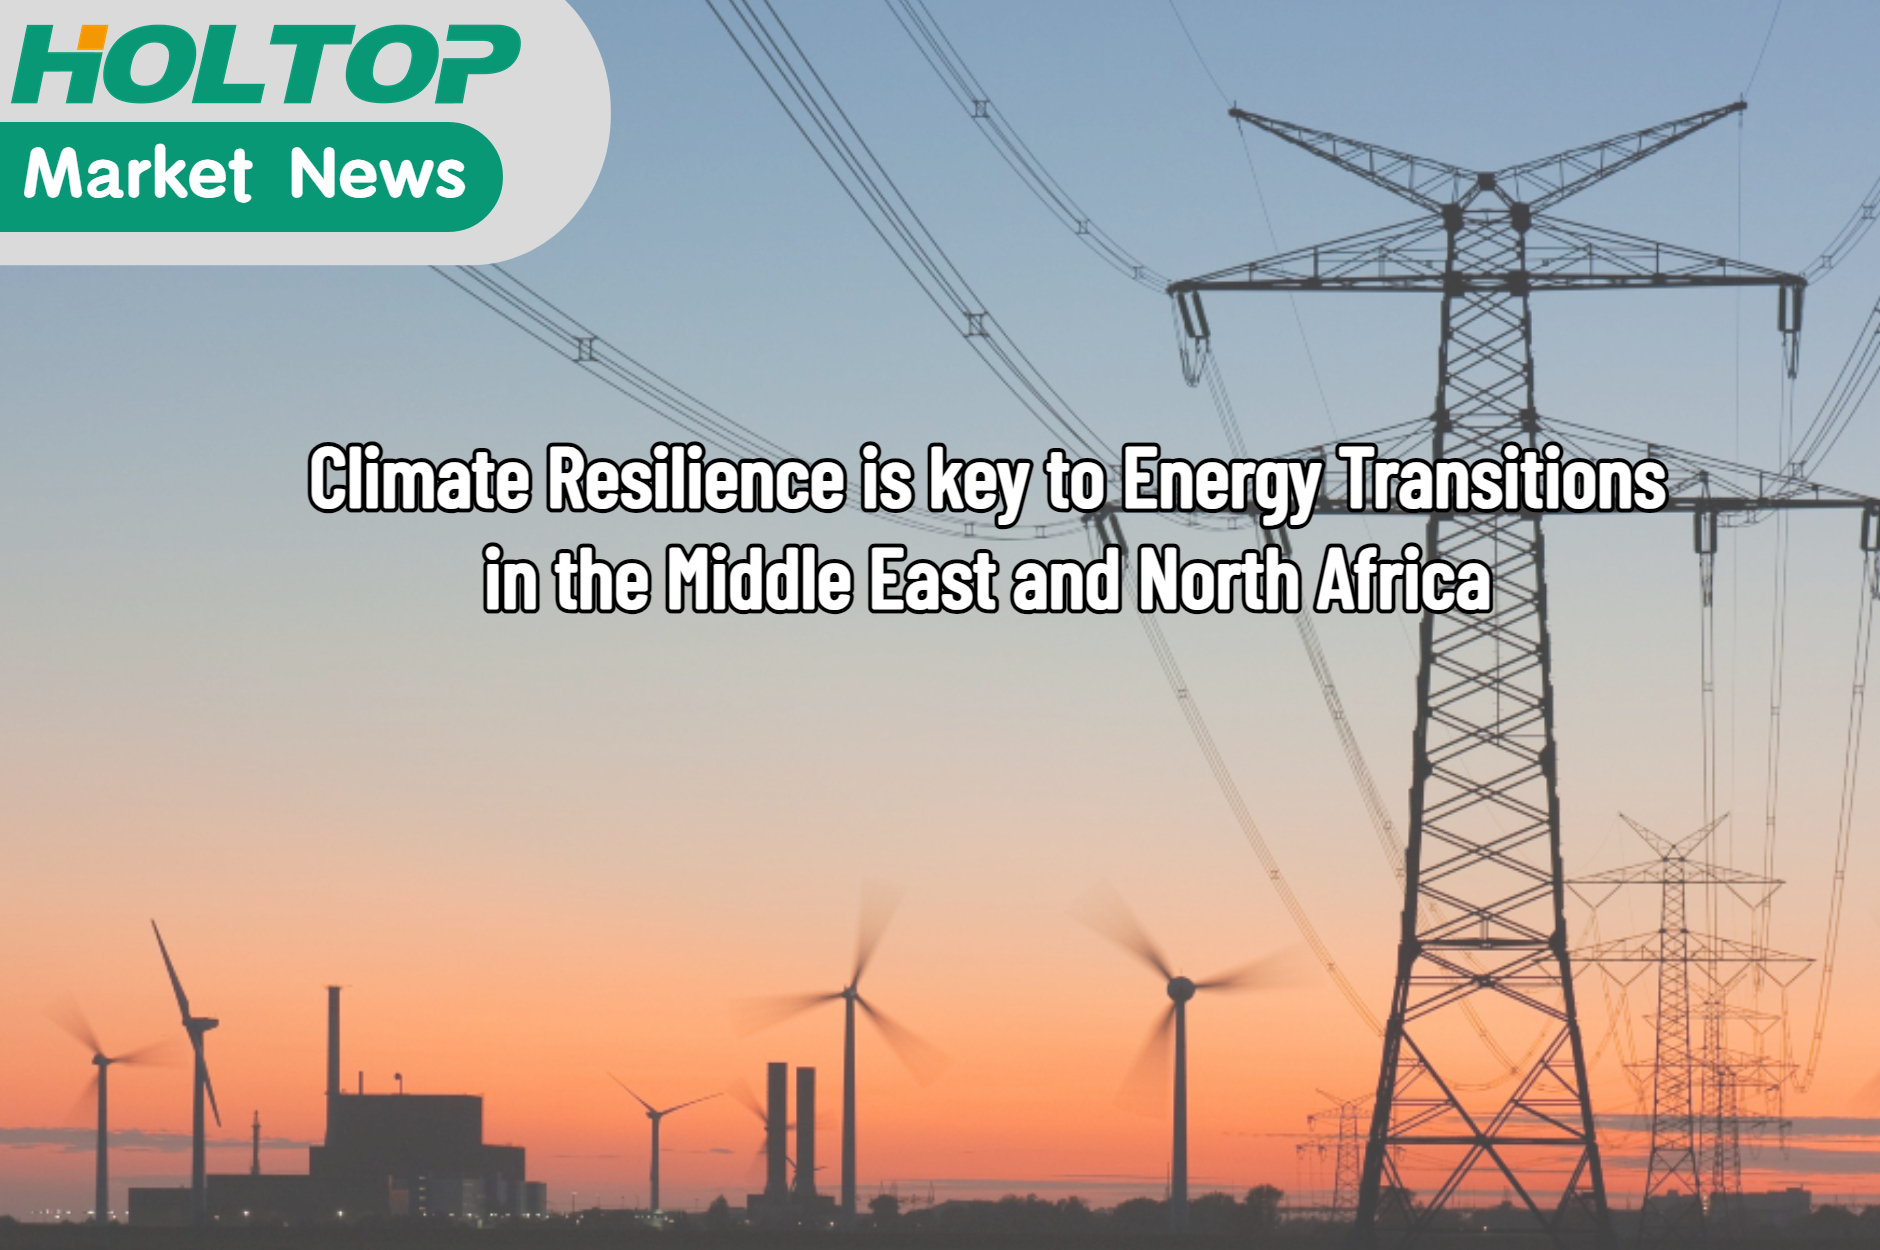 المرونة في مواجهة تغير المناخ هي المفتاح لتحولات الطاقة في منطقة الشرق الأوسط وشمال إفريقيا